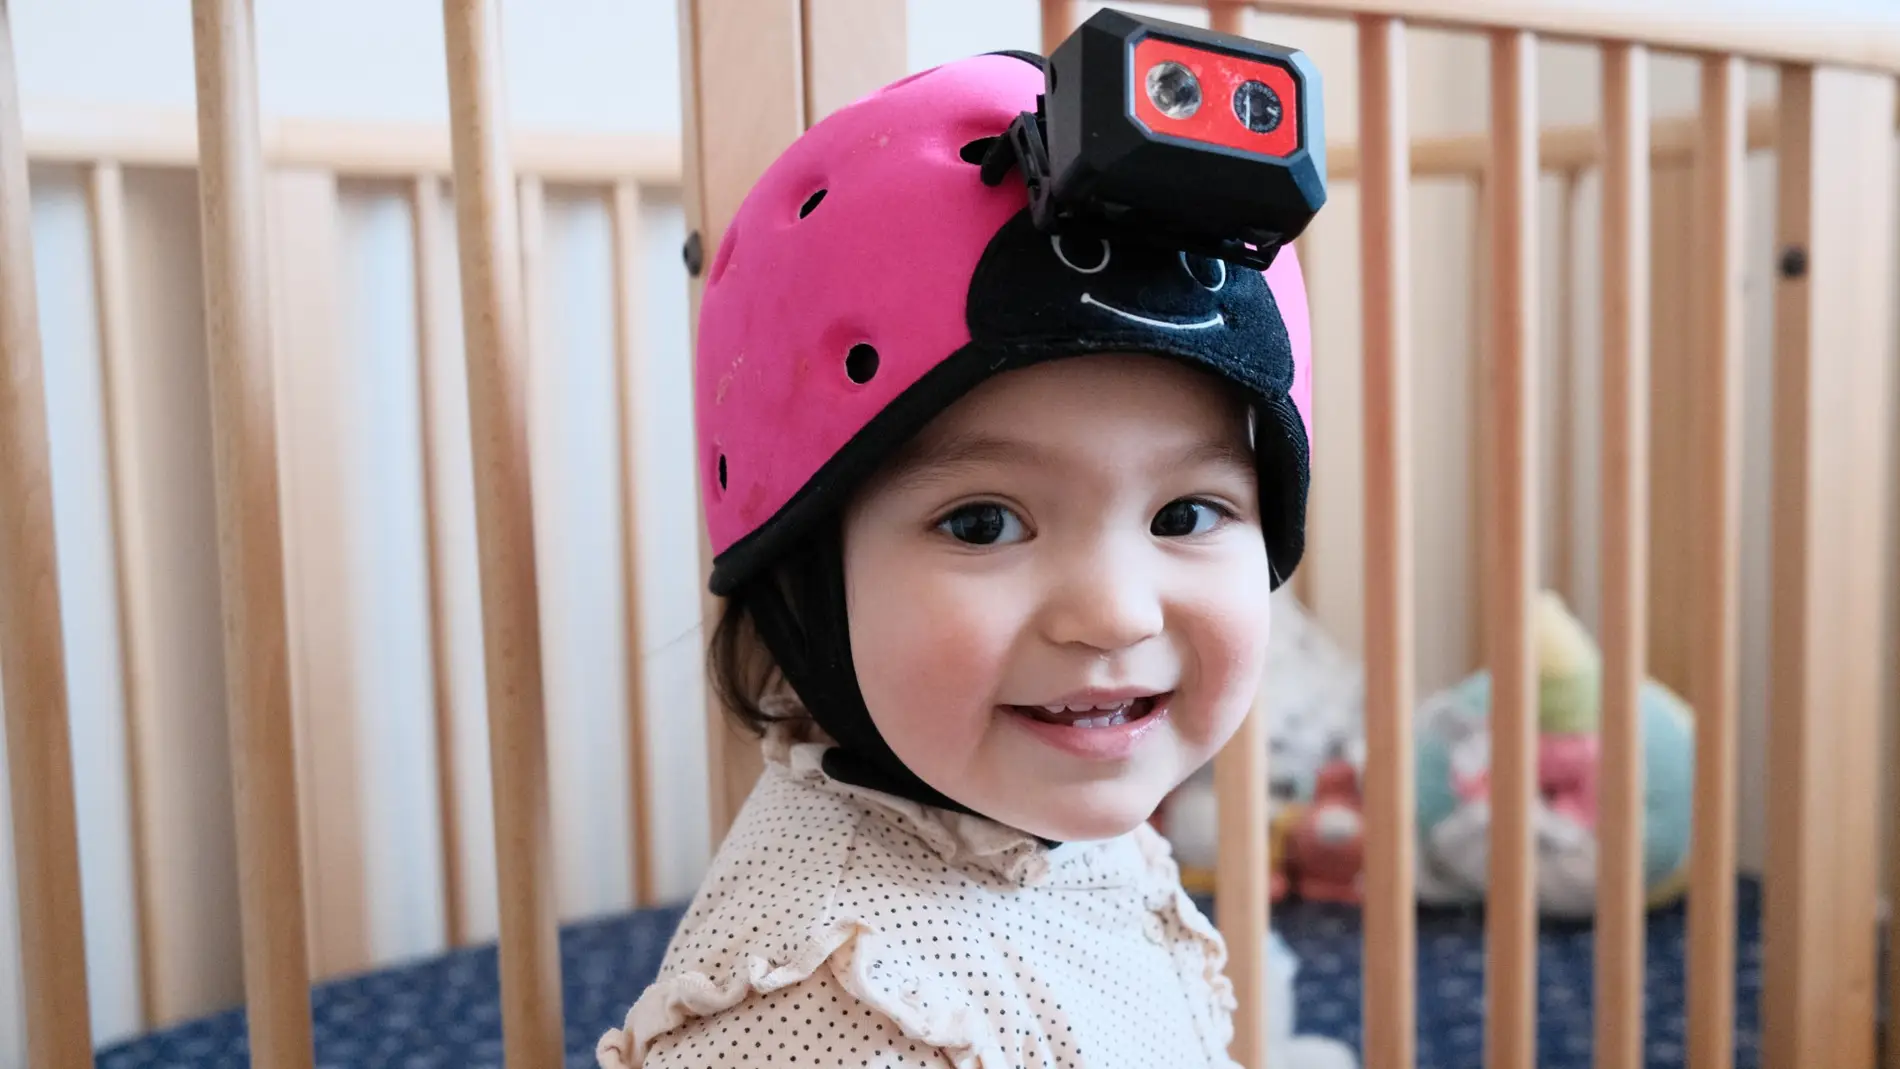 ebé de 18 meses con una cámara en la cabeza